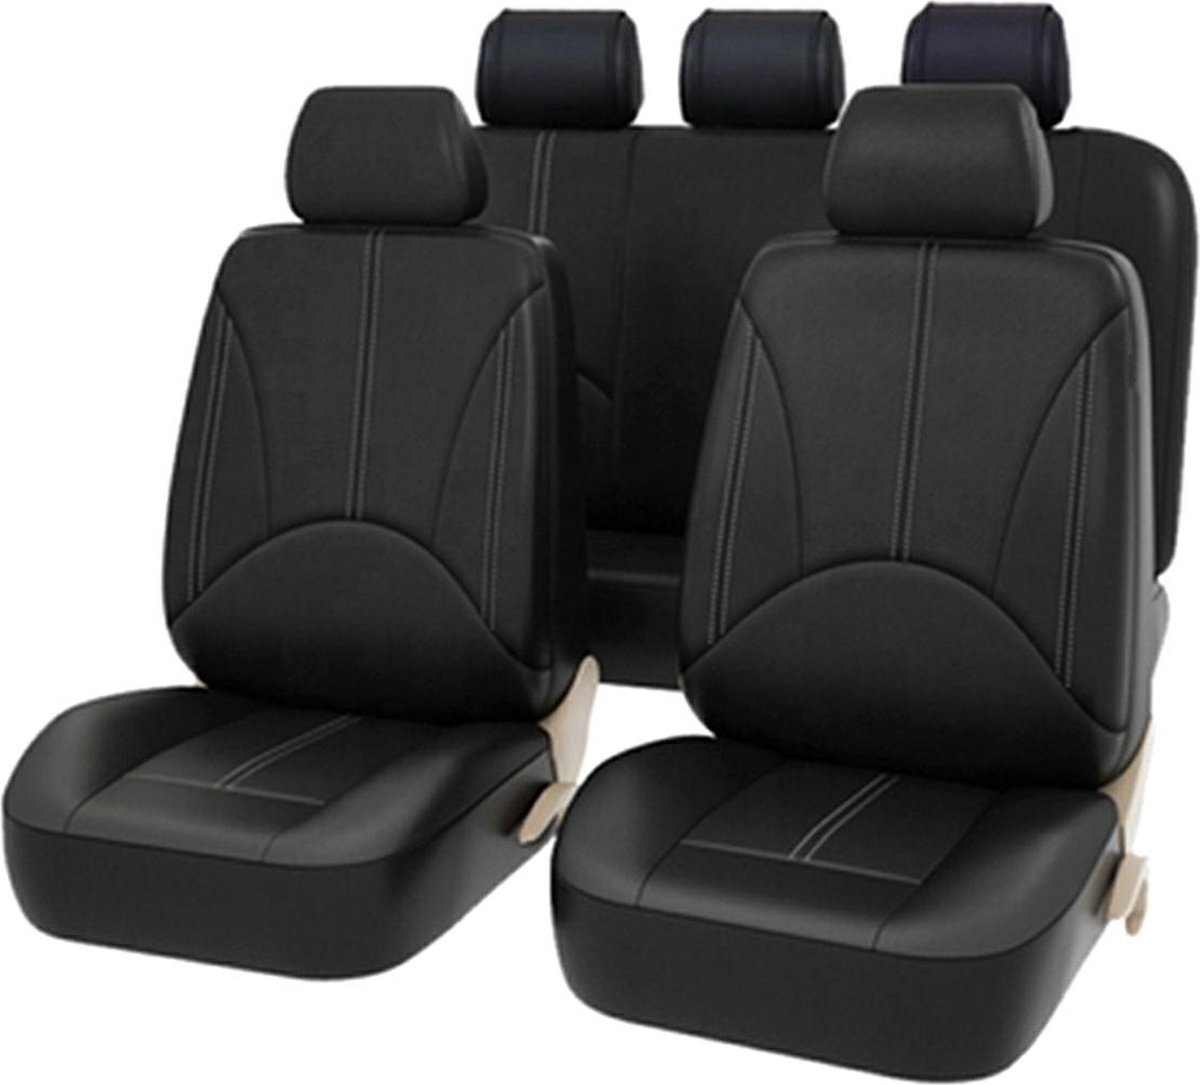 Housse De Siège Voiture Auto pour Seat Altea Comfort Noir éco-cuir